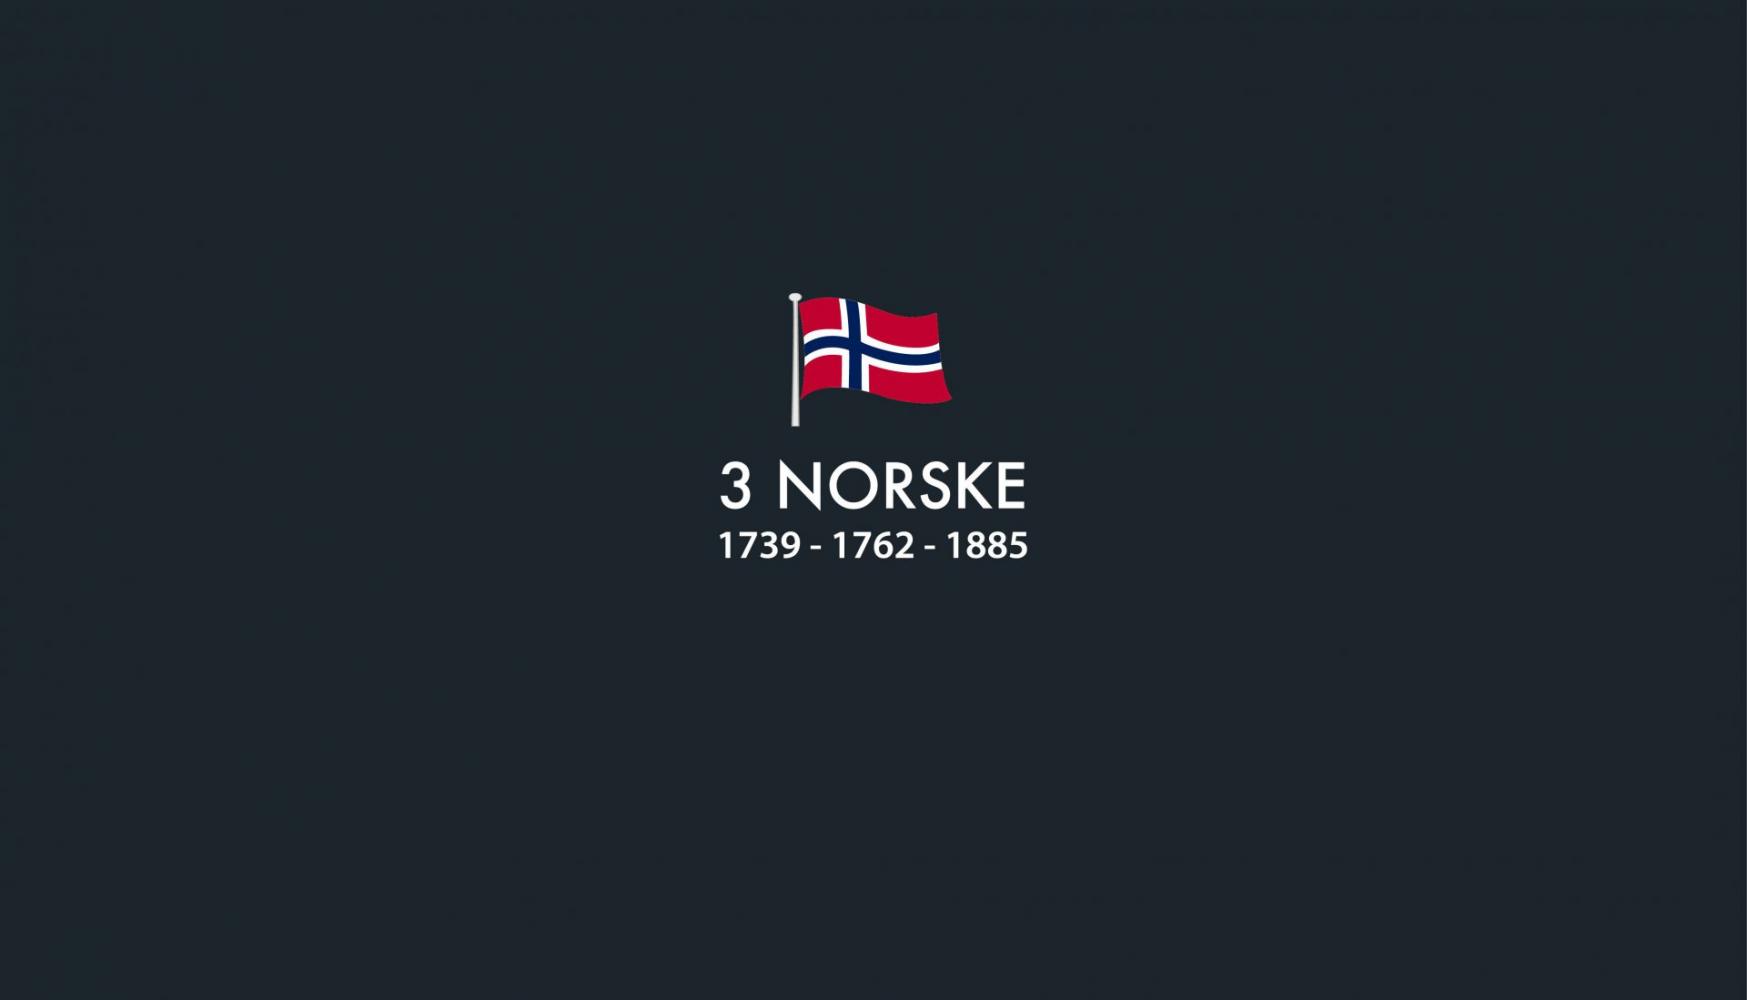 3 Norske AS